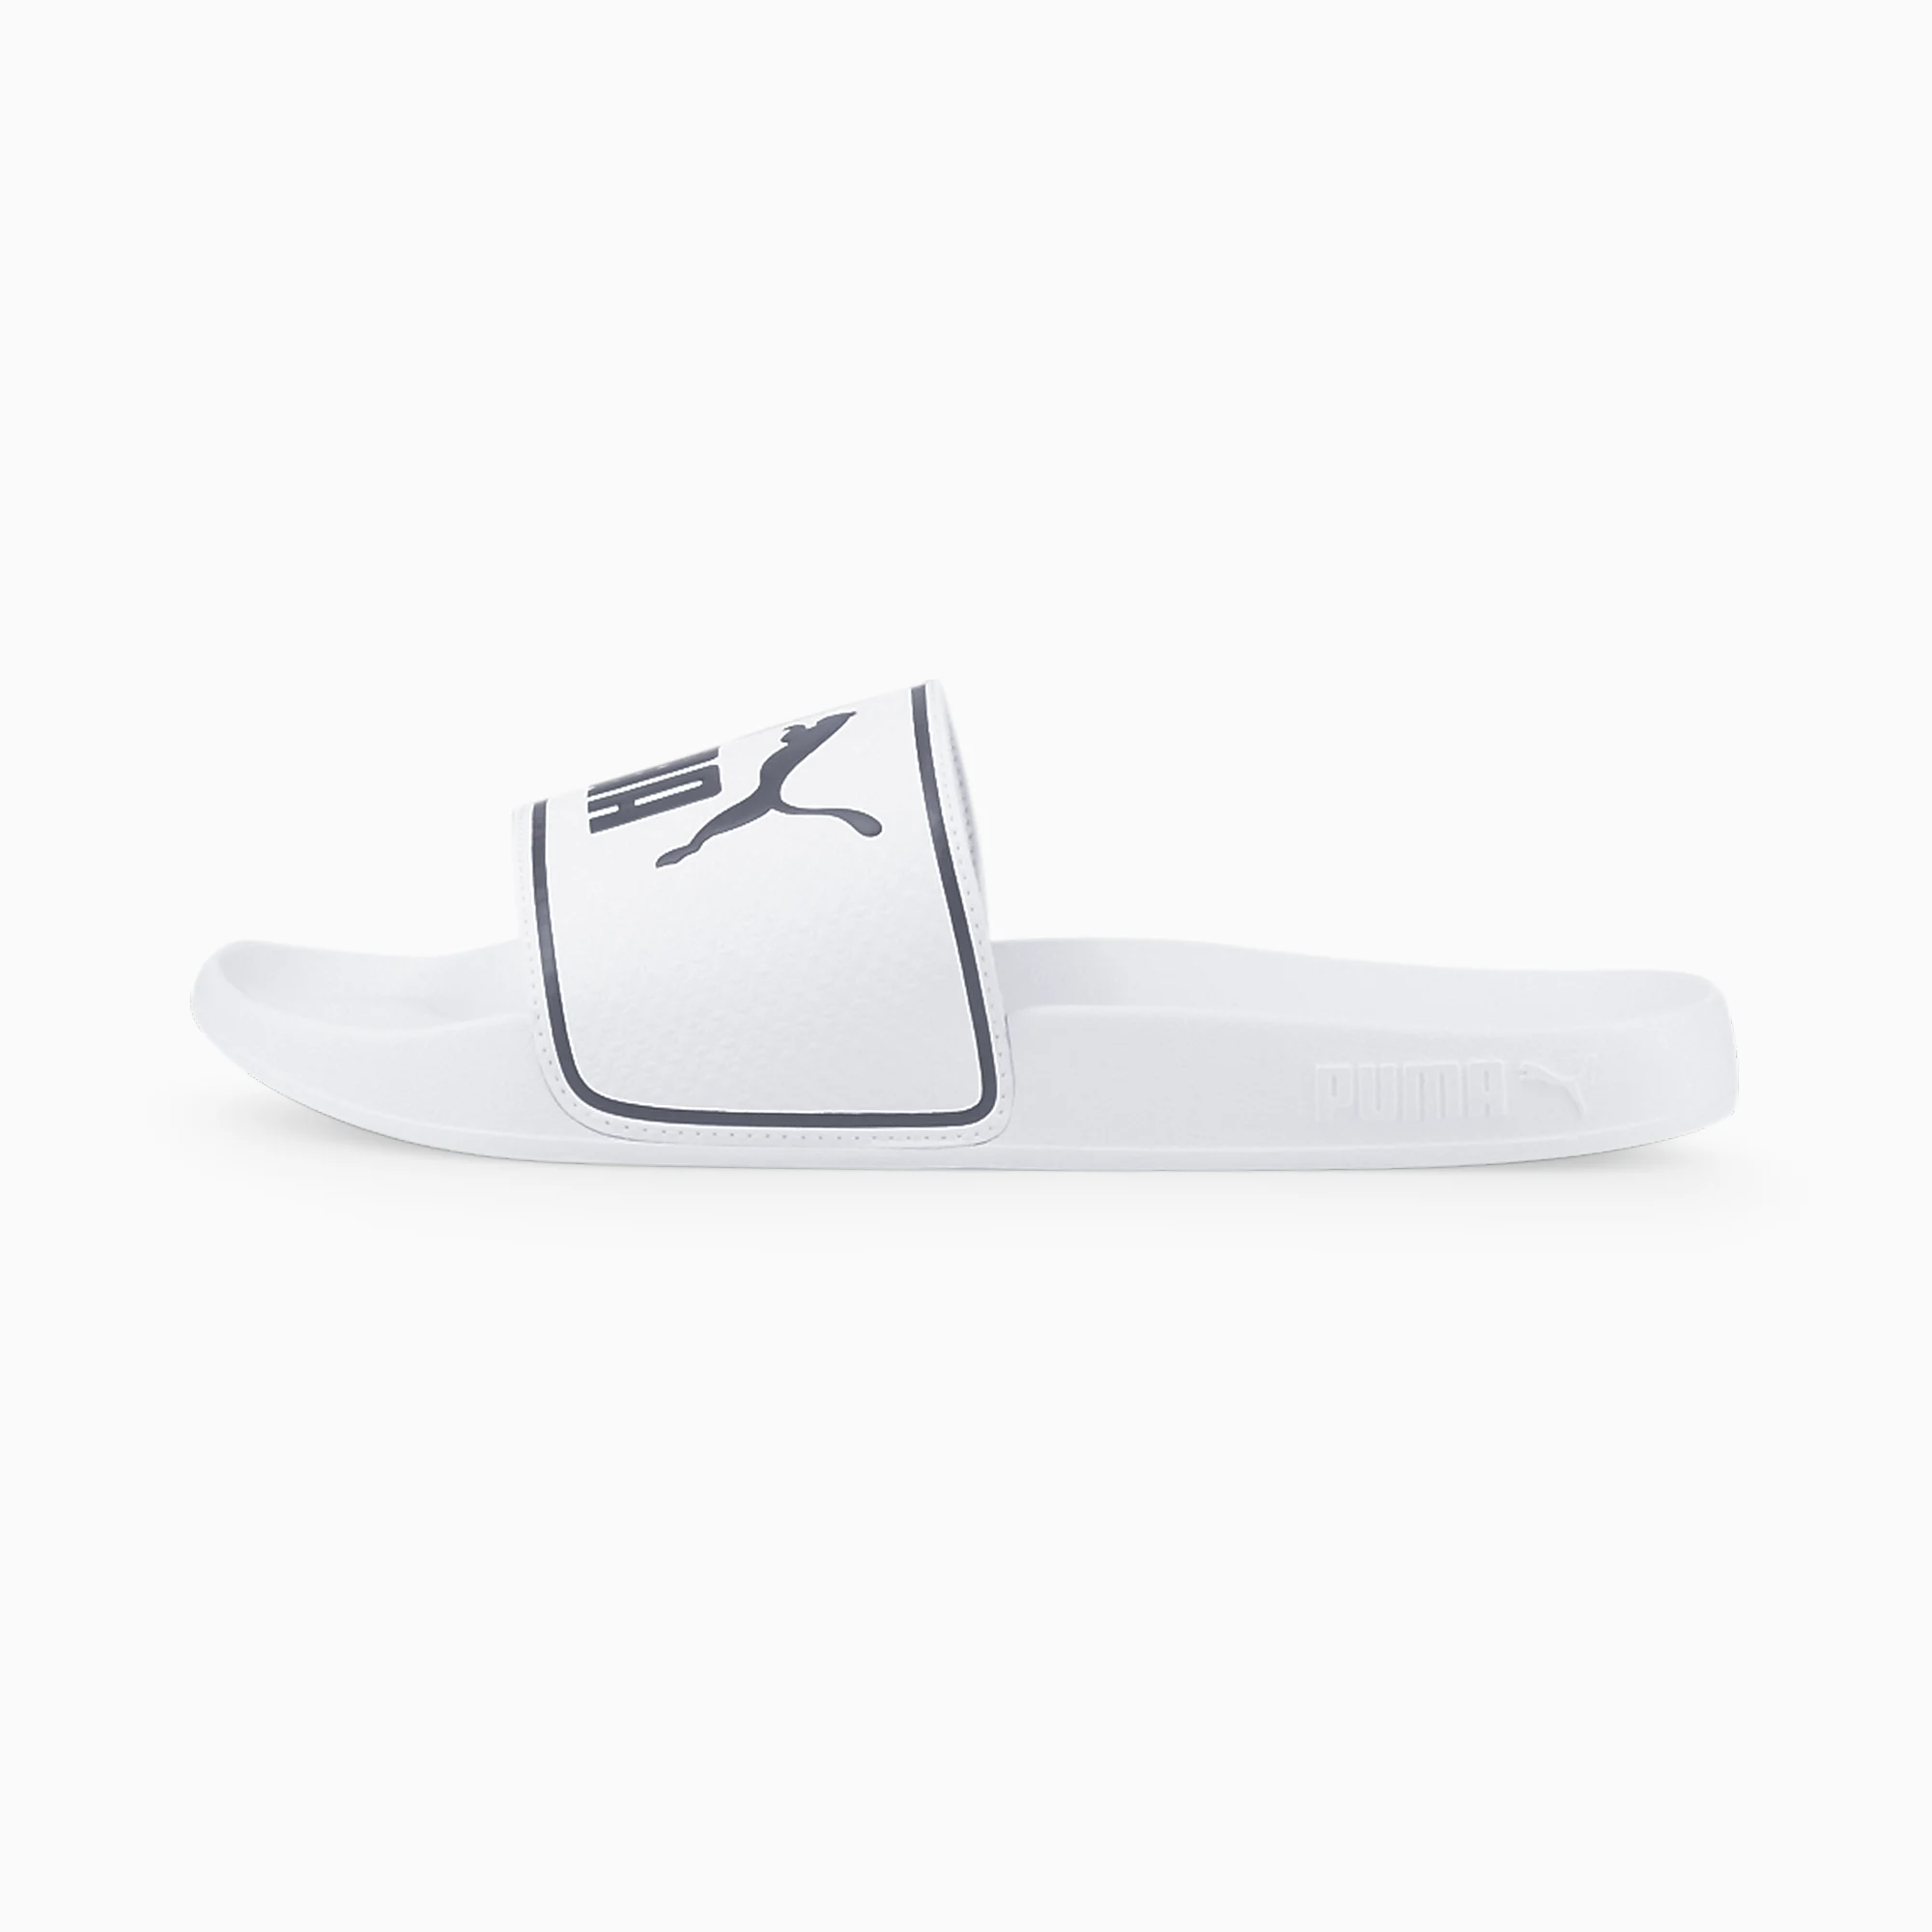 Puma Leadcat 2.0 Men's Sandals-White